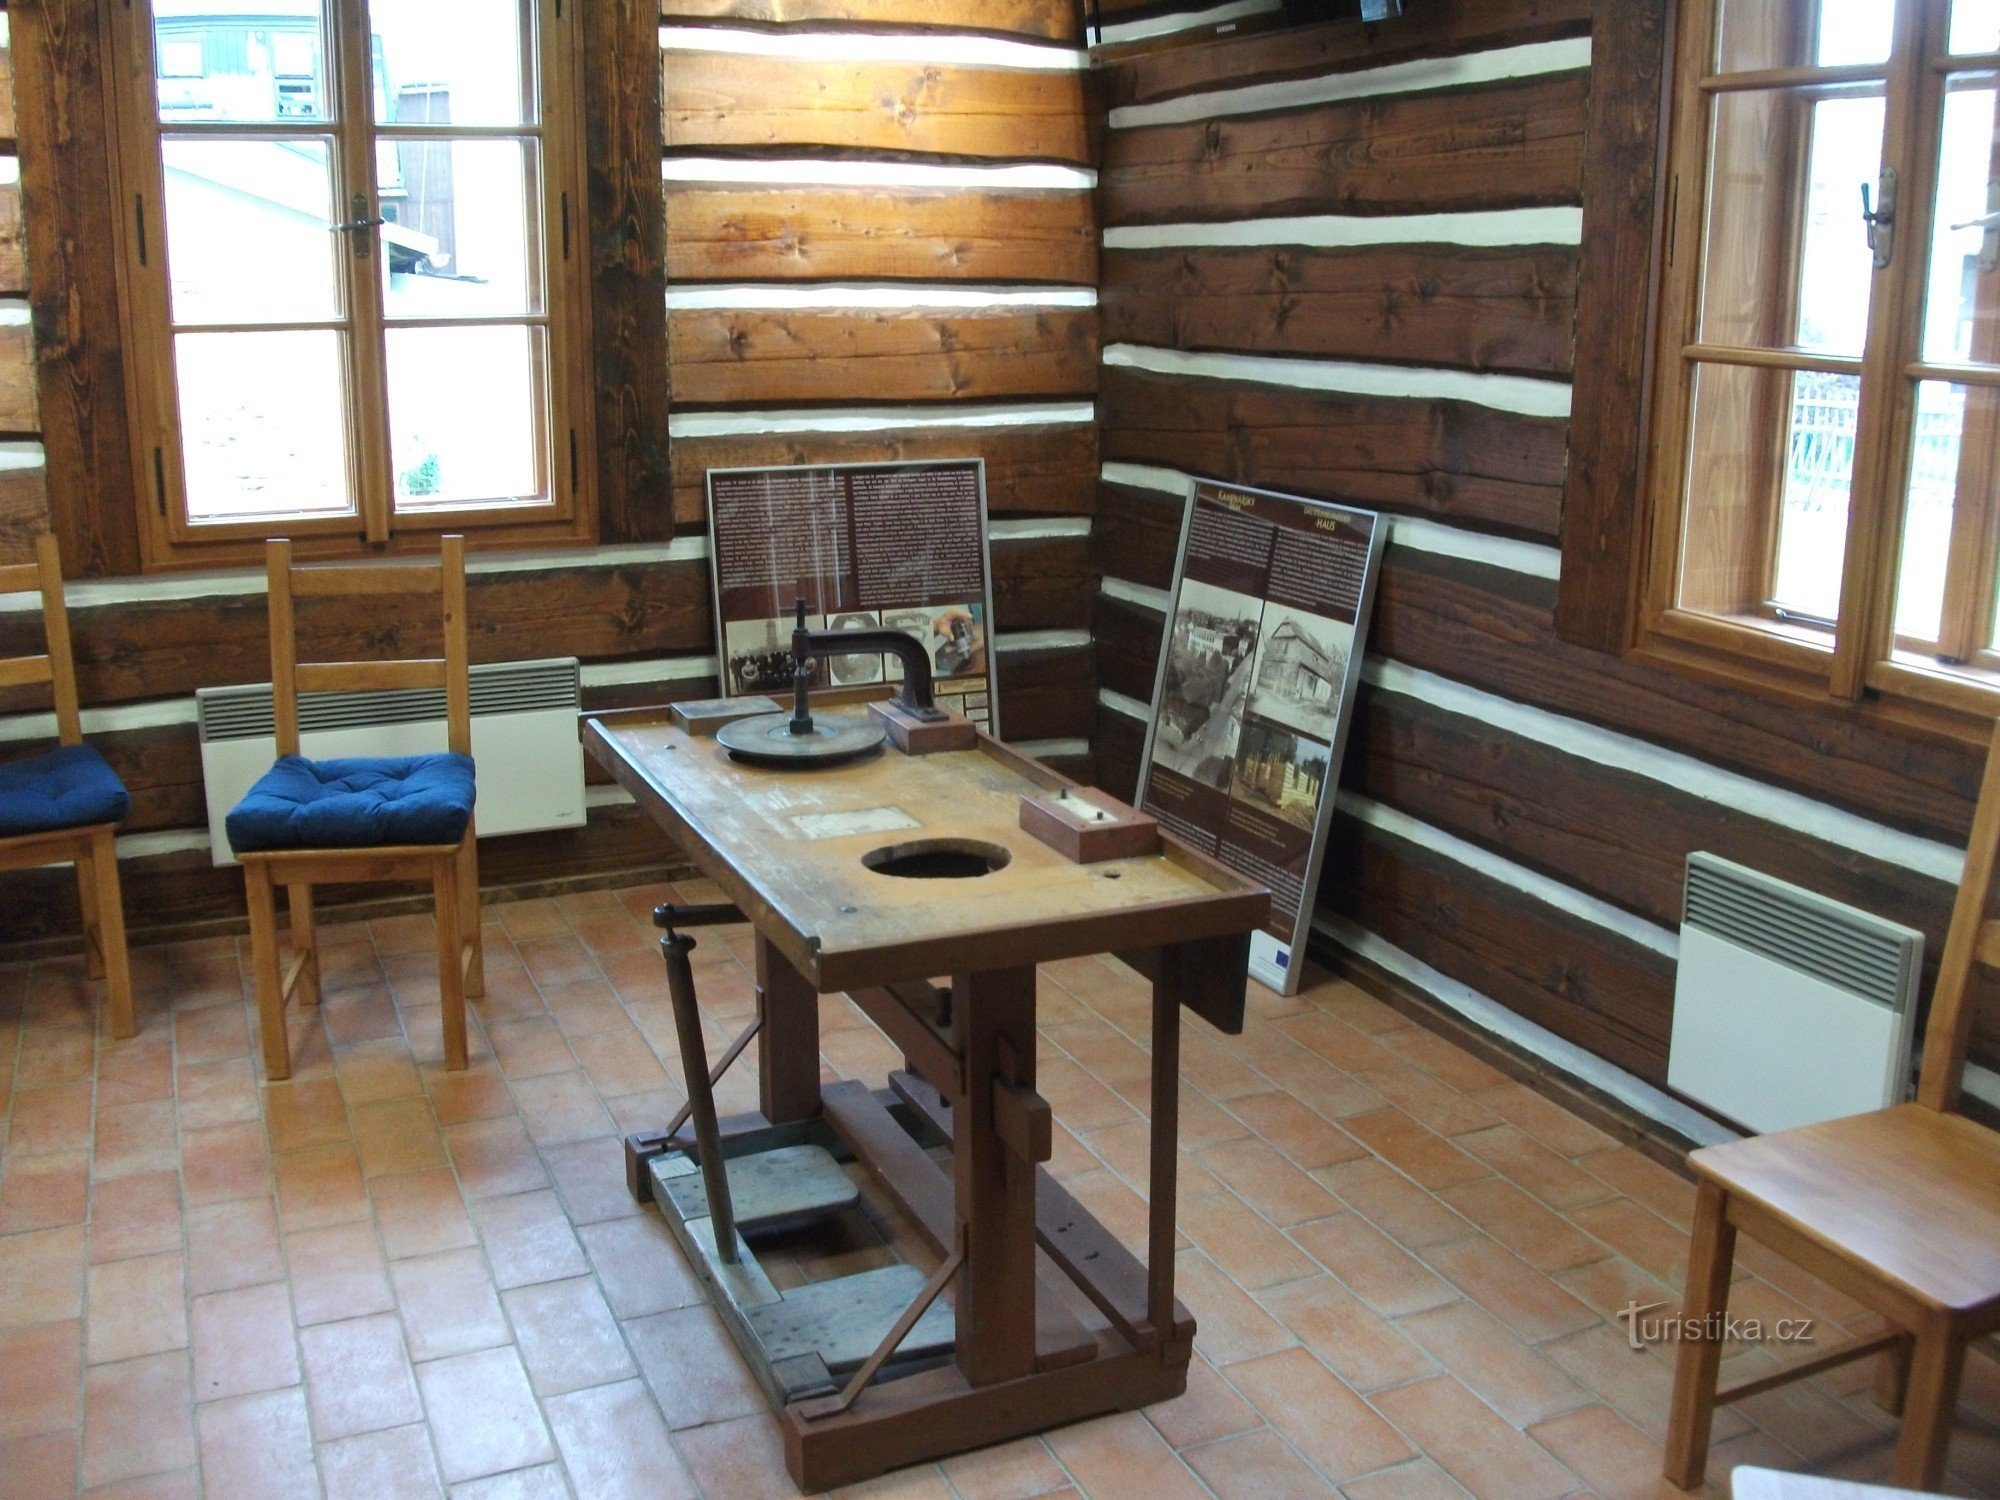 Notranjost Kamnite hiše vsebuje tudi delovno mizo z obdelovalnimi orodji